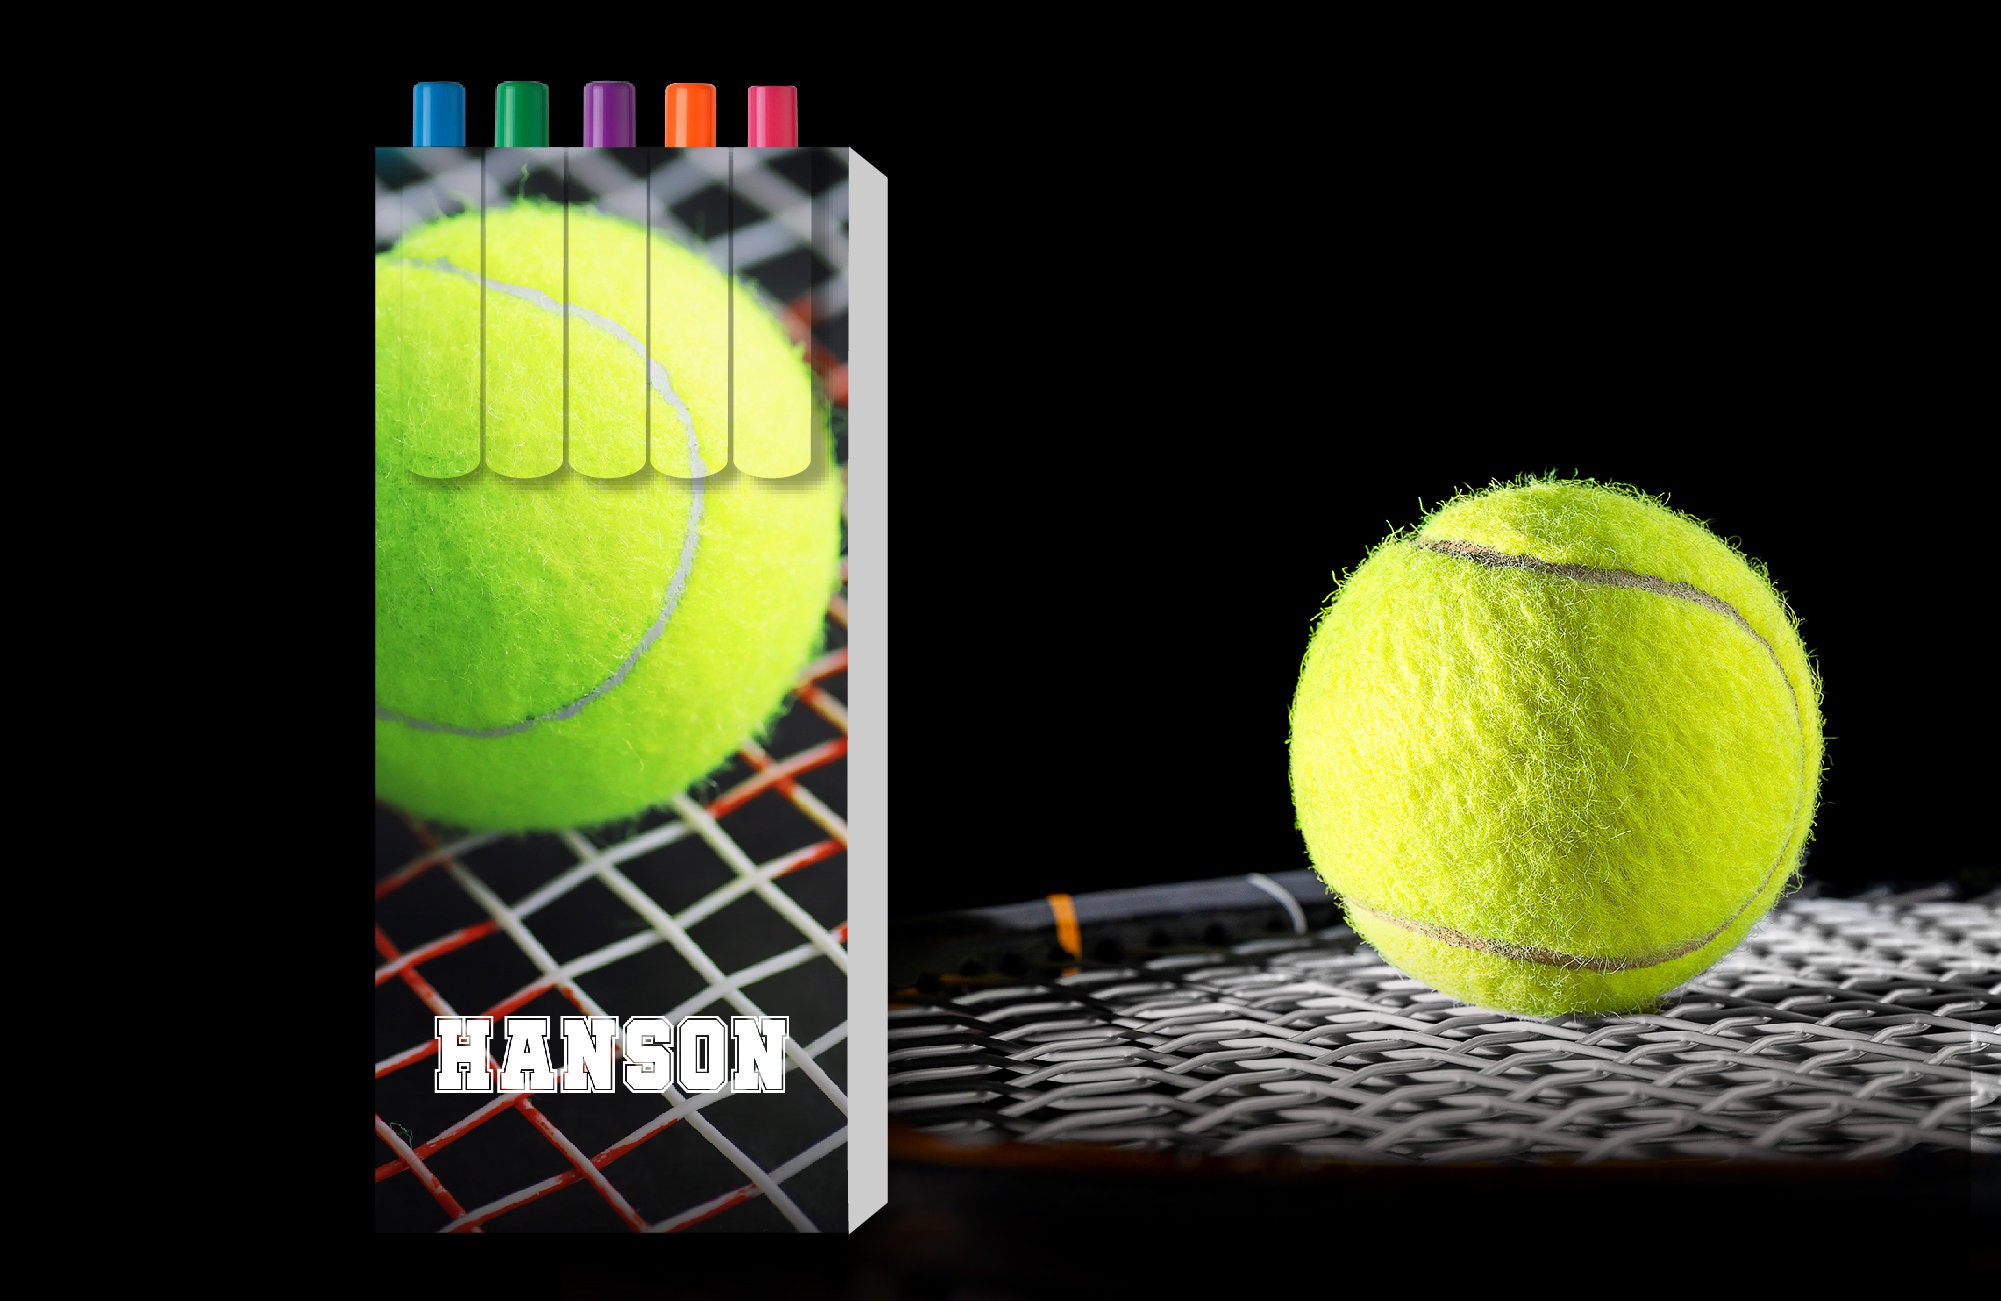 Kit de Résine pour Courts de Tennis avec Peinture Sportive Couleur